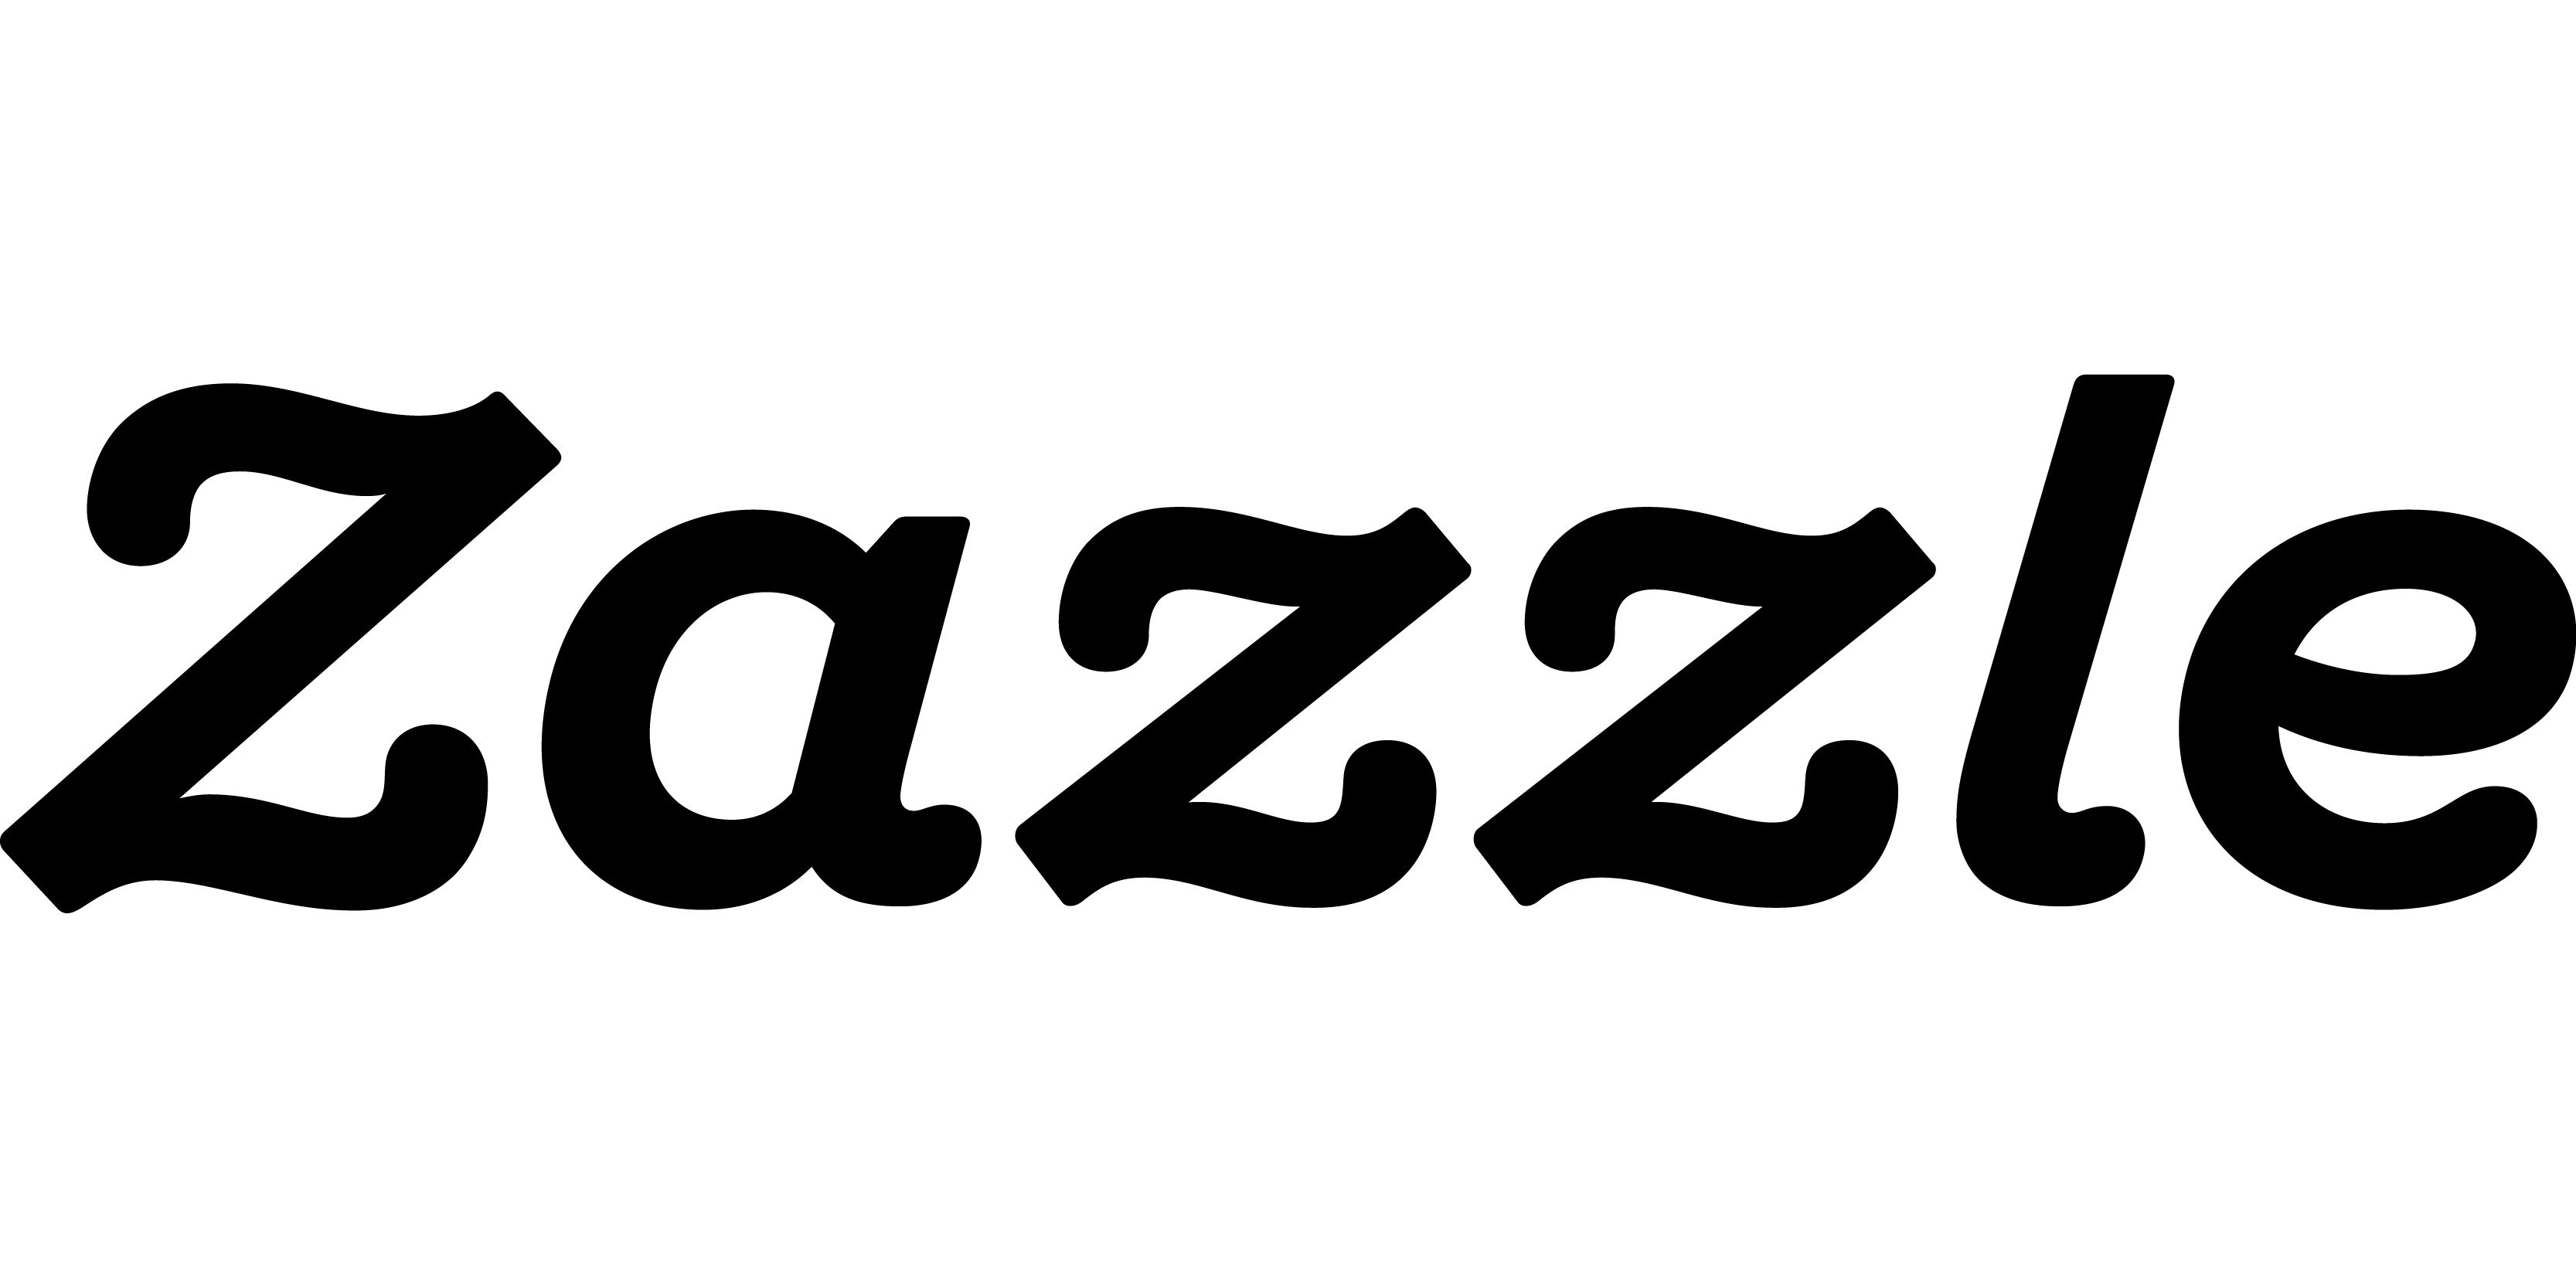 Zazzle Proxy'si